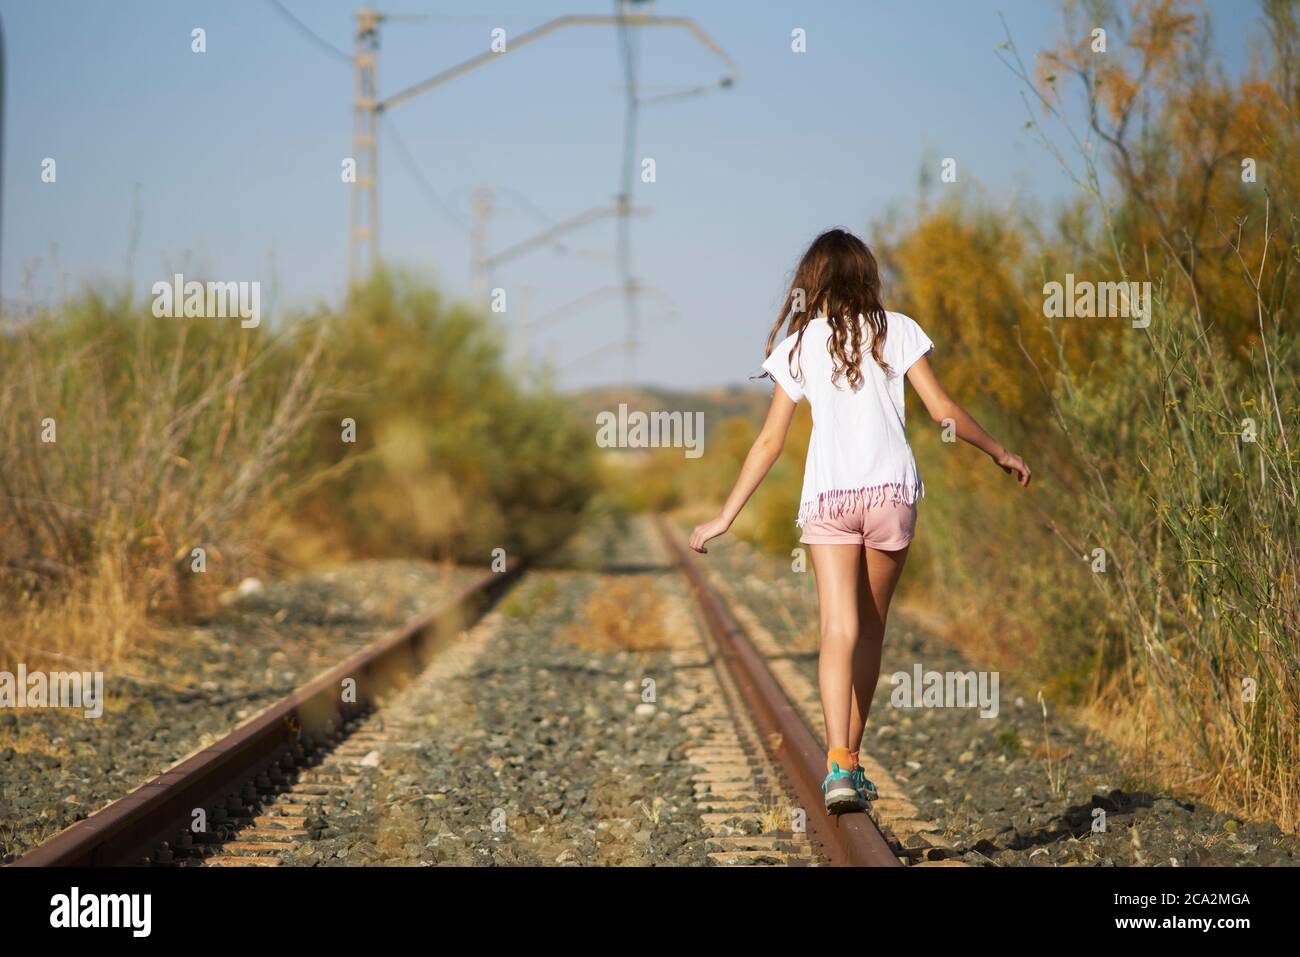 chica jugando equilibrio en una pista de tren abandonada en el campo Foto de stock